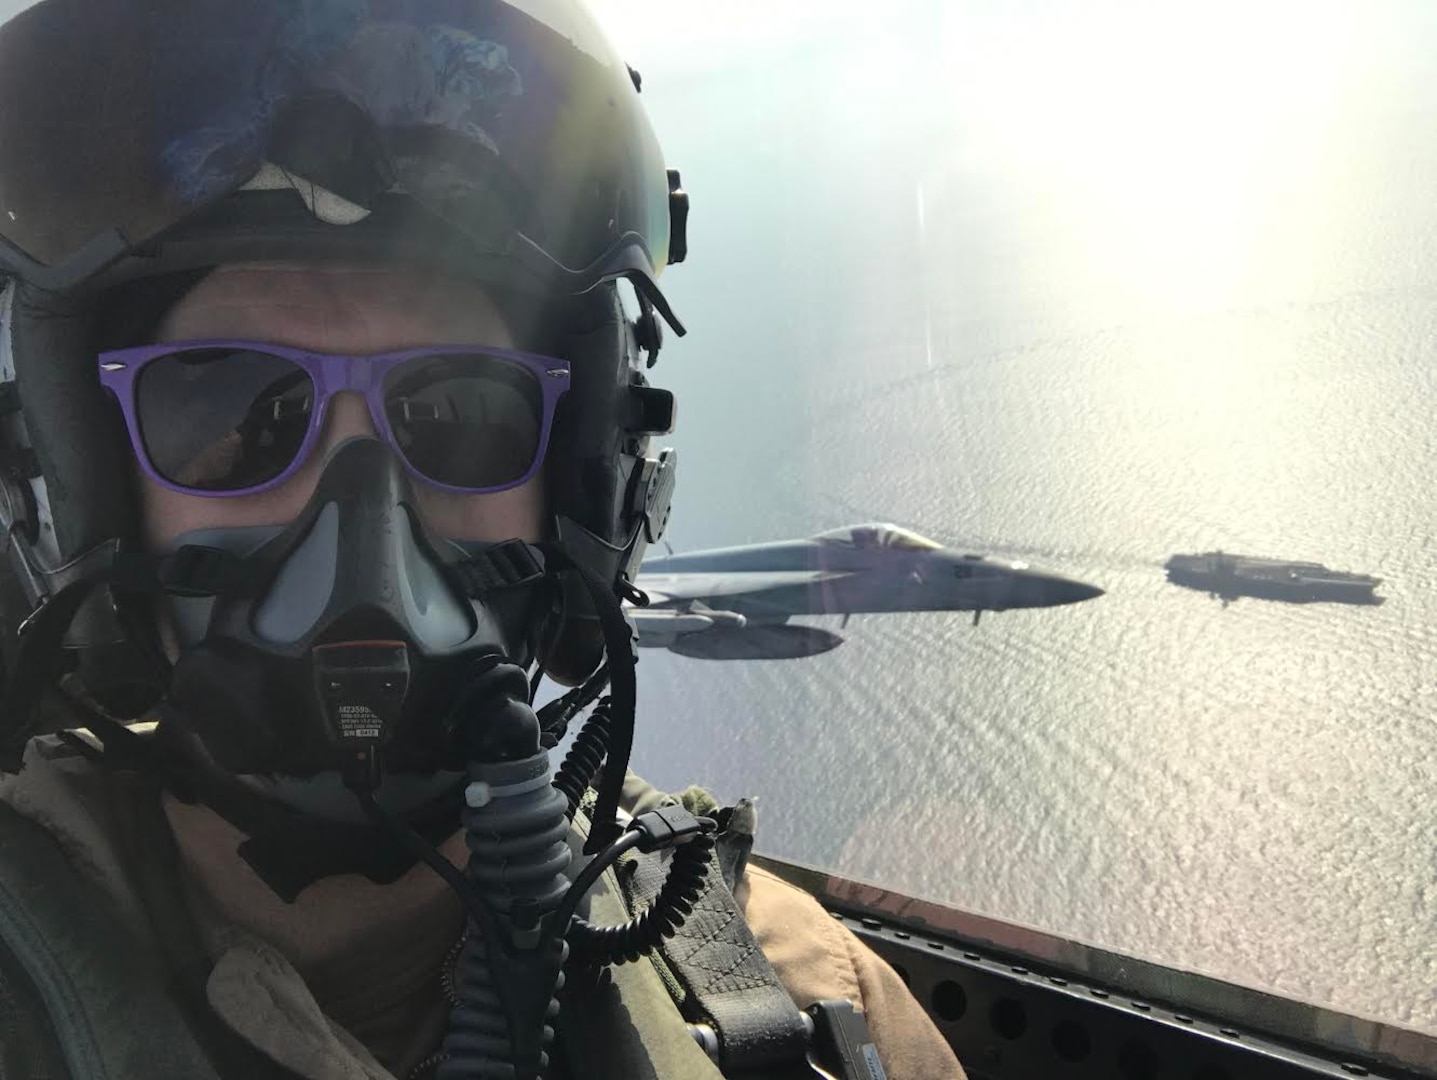 Pilot wearing purple sunglasses takes selfie in jet